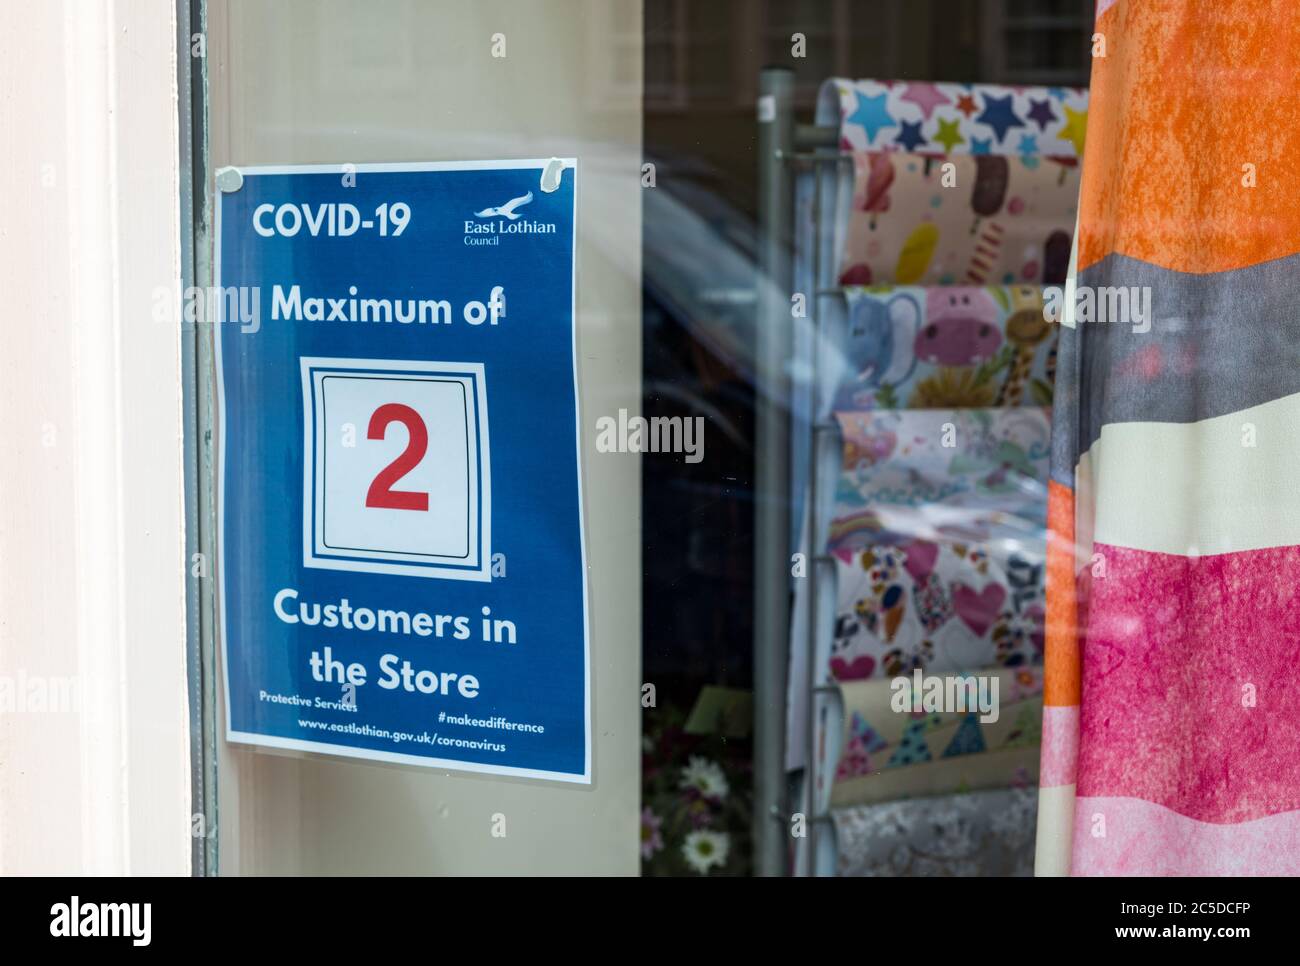 Haddington, East Lothian, Scozia, Regno Unito 2 luglio 2020. Covid-19 vita: La vita quotidiana nella città mercato è tranquilla anche come la chiusura è facilitata e alcuni negozi non essenziali sono aperti. Il centro della città è normalmente vivace in una mattina feriale. Un piccolo negozio di alta strada con un avviso che consente un massimo di 2 clienti nel negozio in qualsiasi momento durante la pandemia Foto Stock